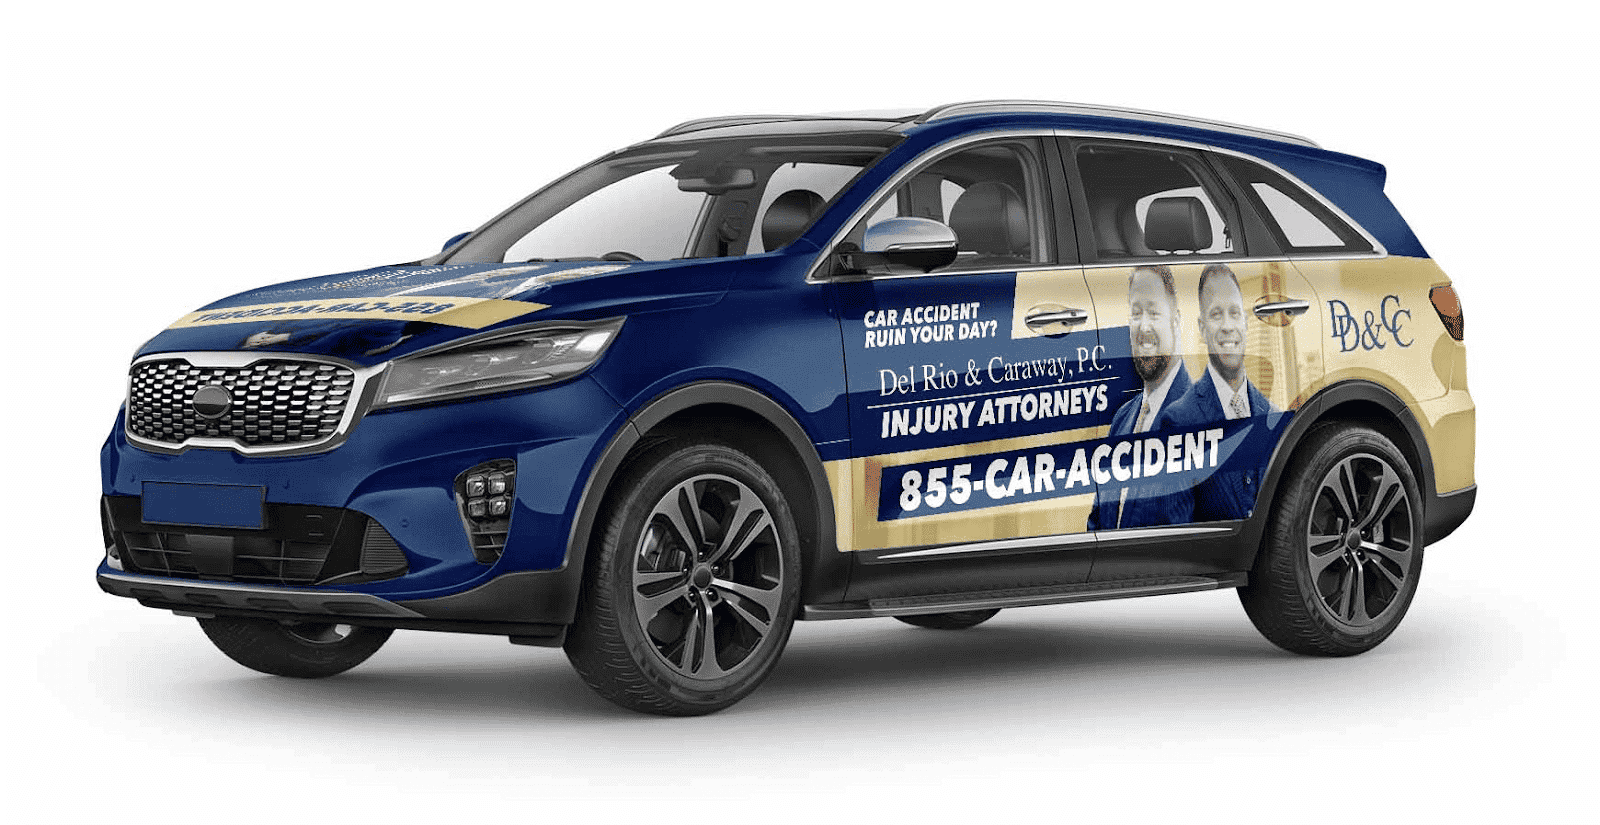 Injury Attorney car wrap ad.